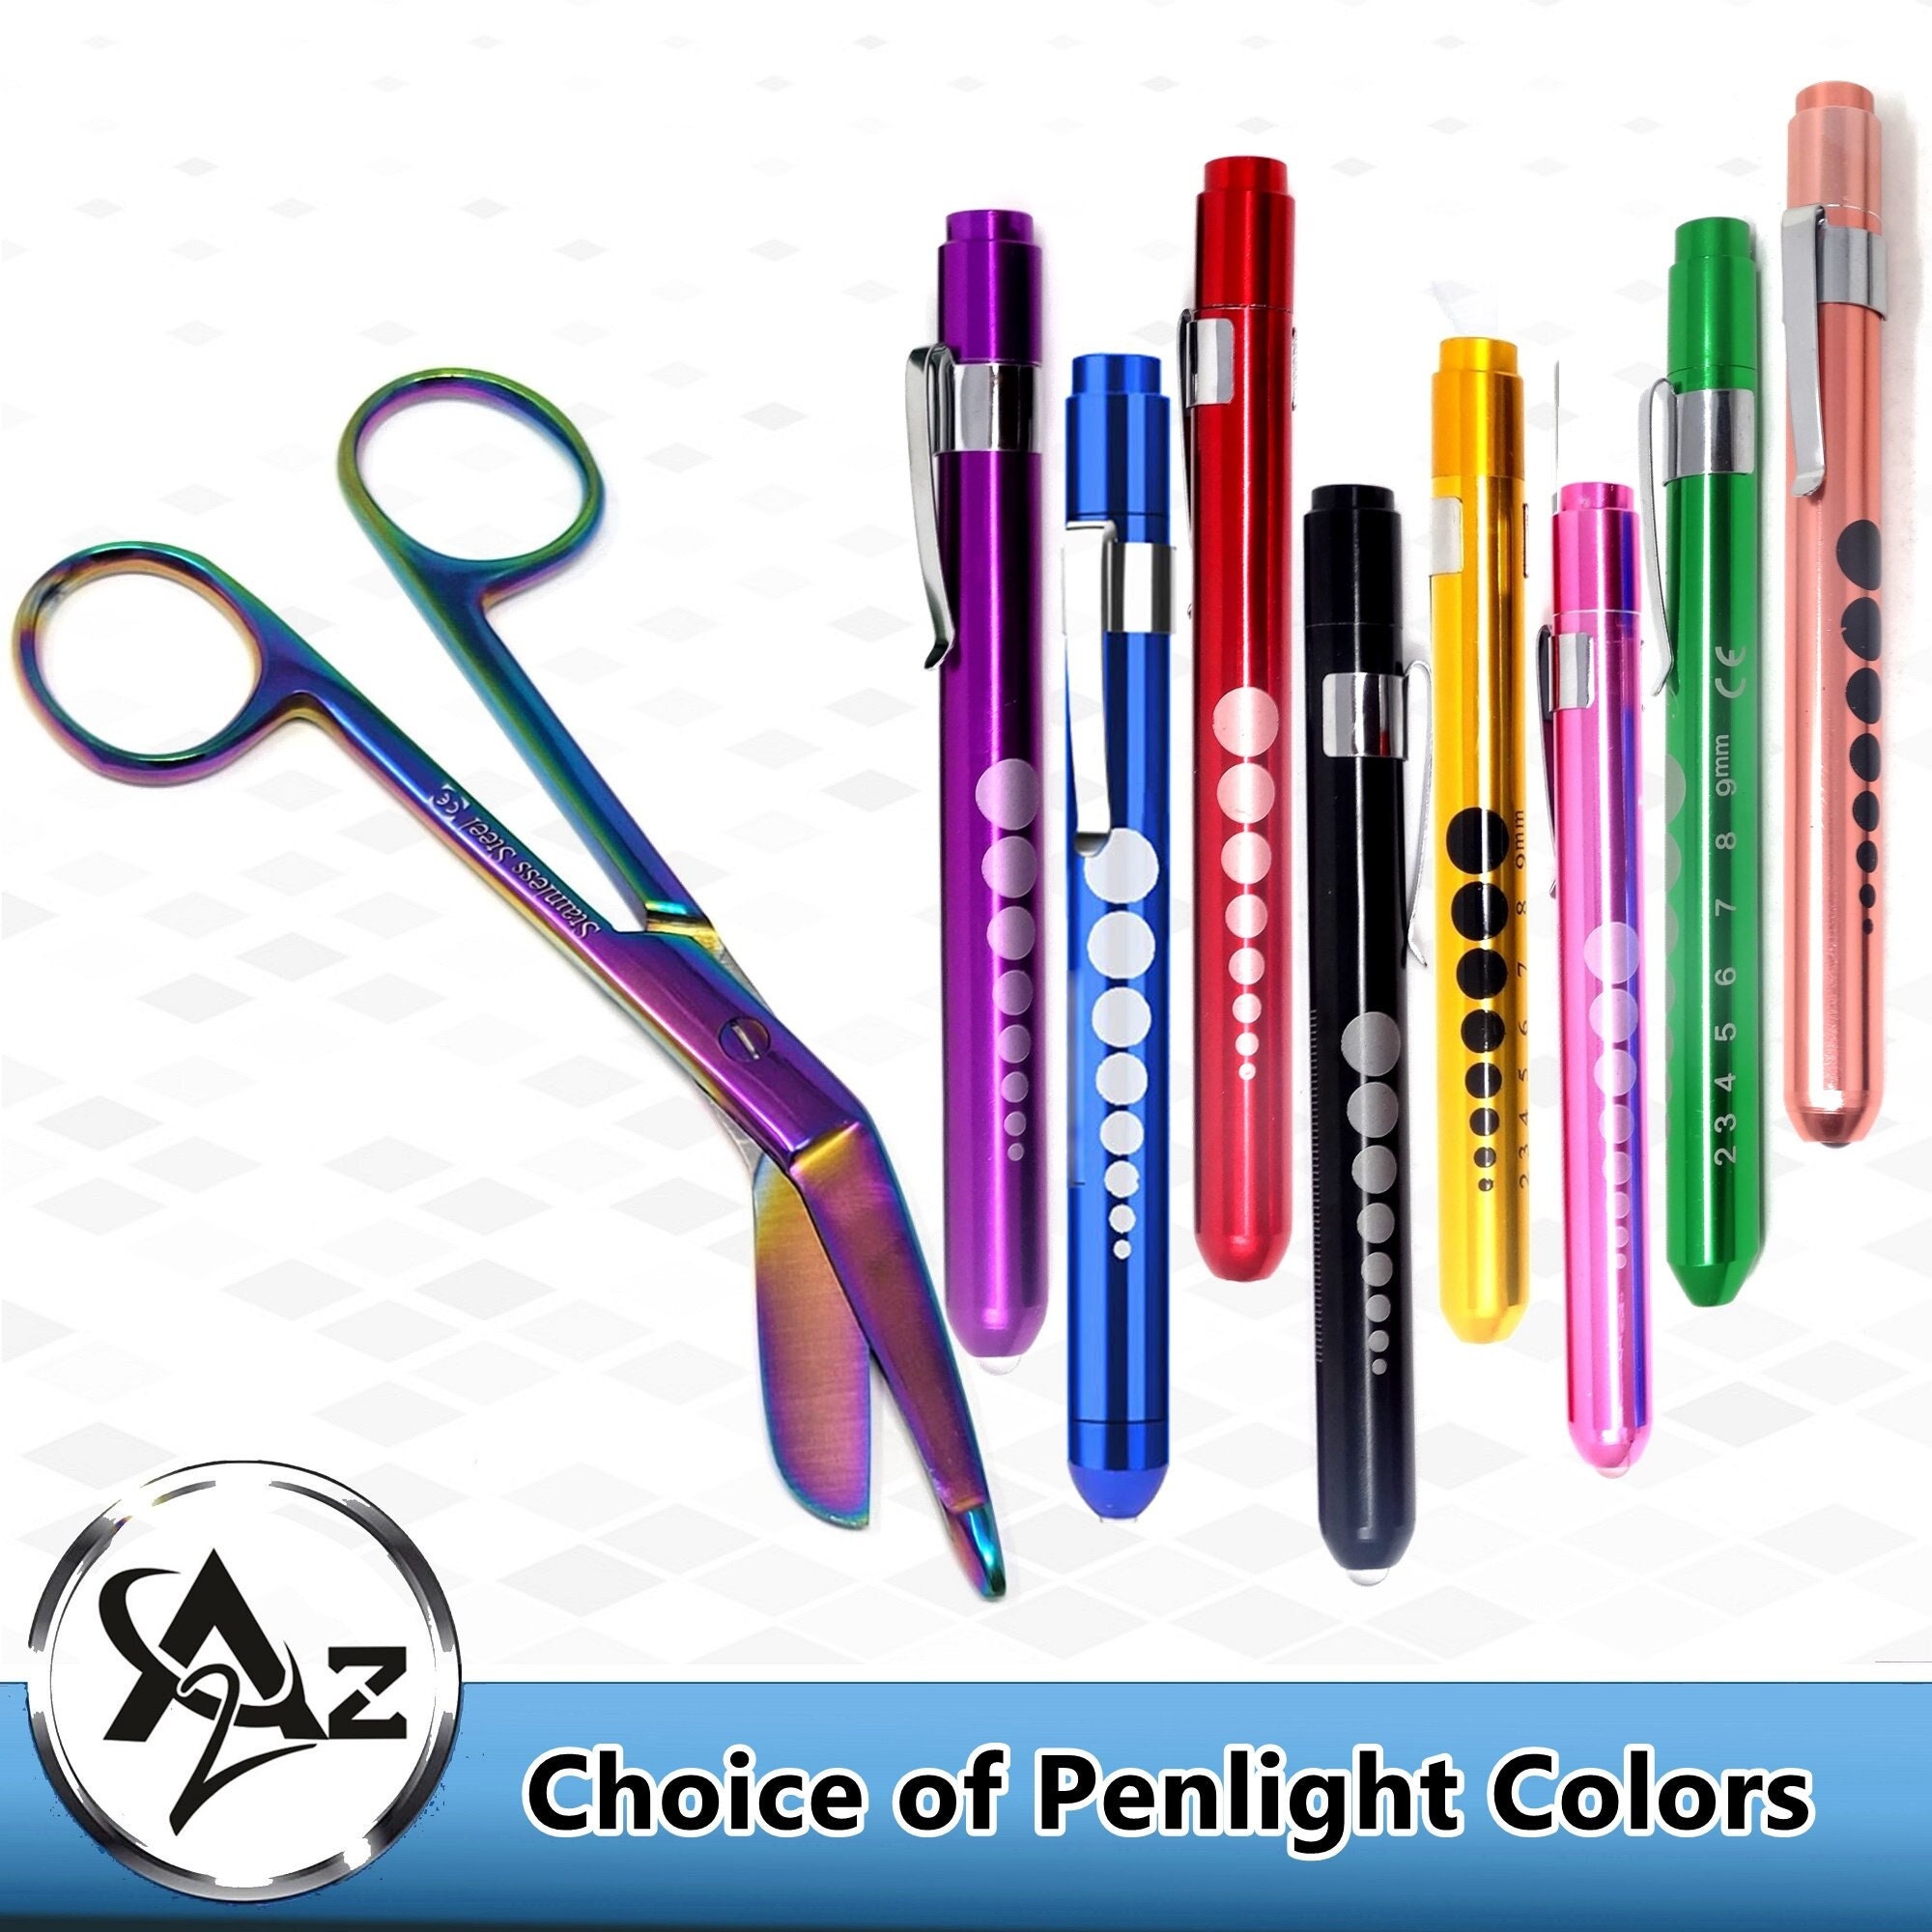 Mini Pen and Trauma 4 Mini Shears, Scissors, Nurse Badge Accessories, Gel  Pen, Mini Accessory Nurse, Permanent Marker, Dry Erase Marker 